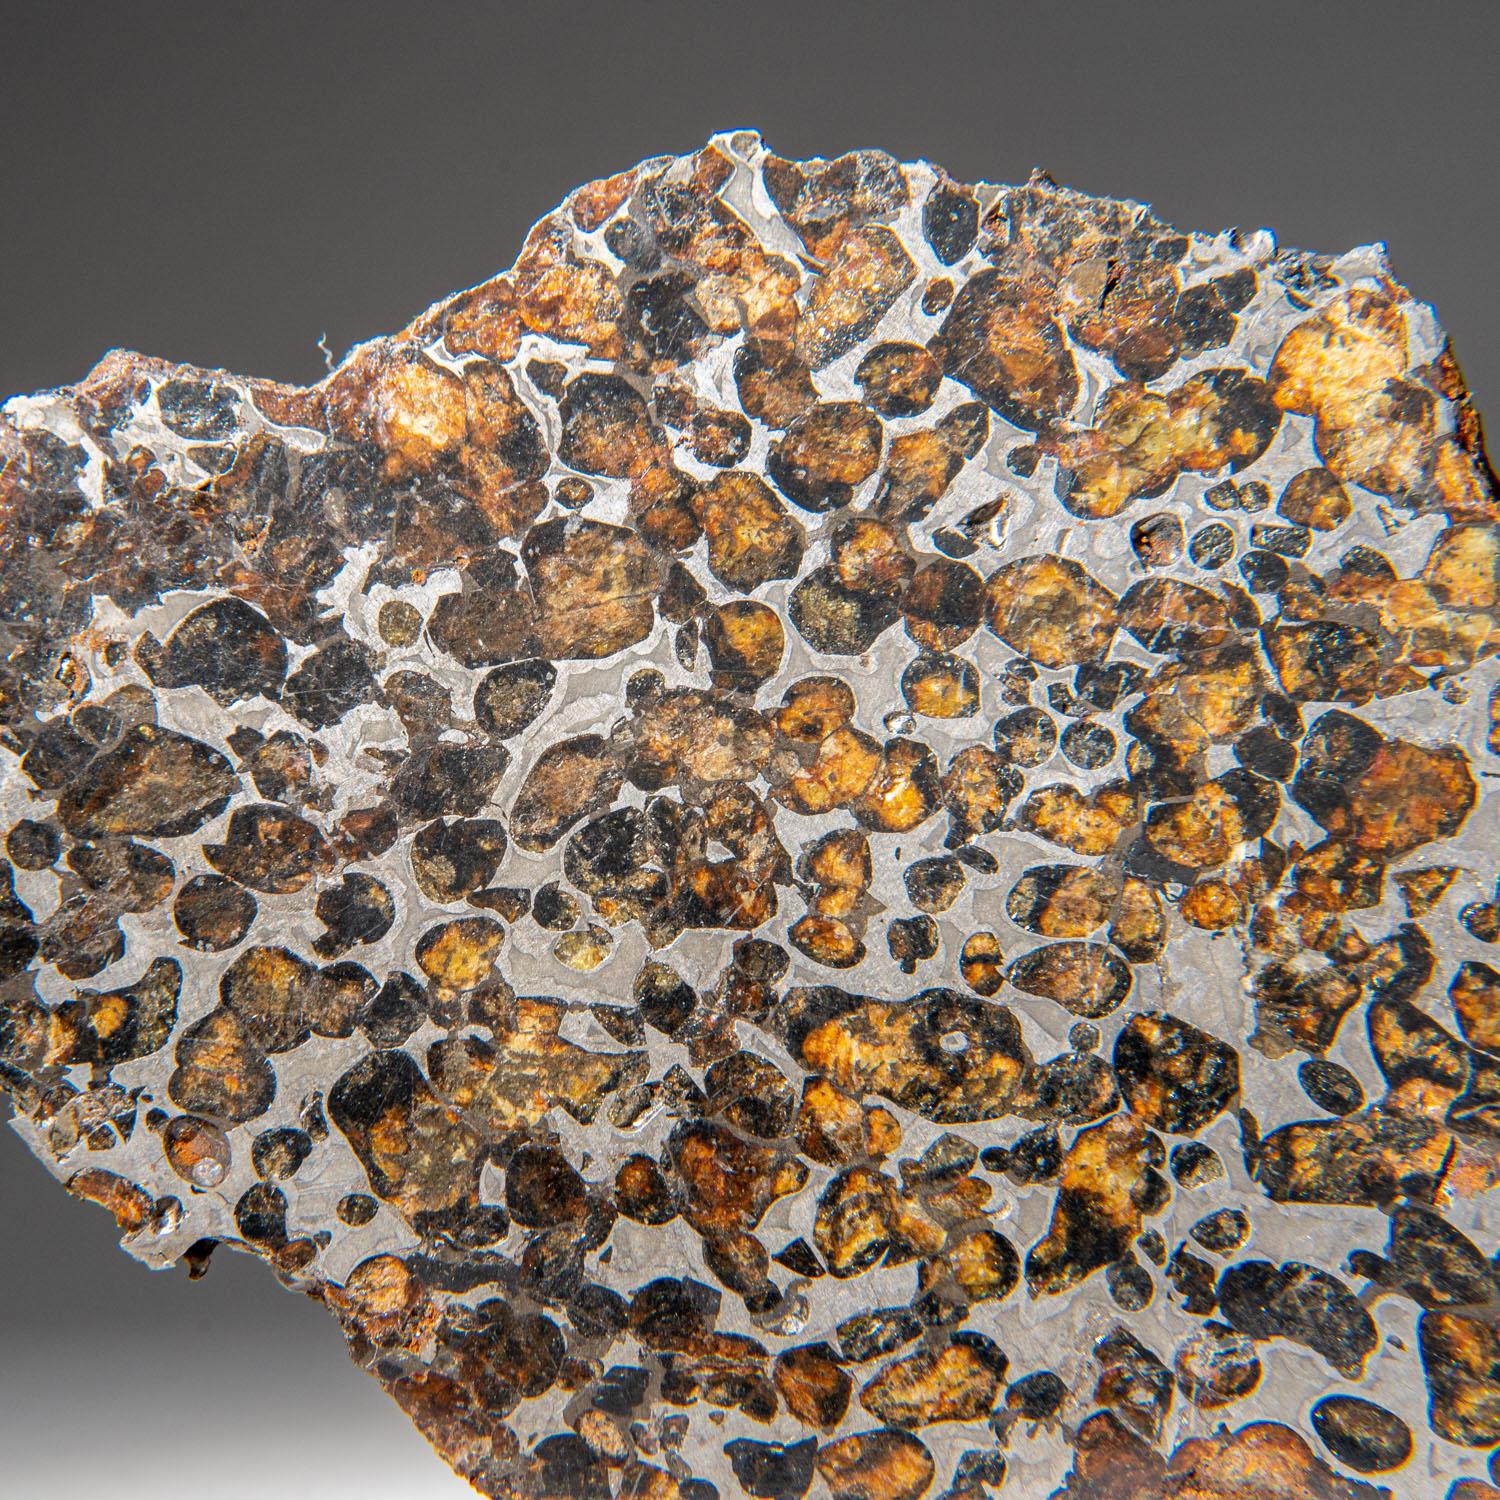 En 2016, de grandes masses de la météorite pallasite de Sericho ont été acquises auprès de villageois du comté d'Isiolo, au Kenya, marquant ainsi sa découverte officielle. Les cristaux d'olivine ont une couleur allant du vert émeraude à l'orange et